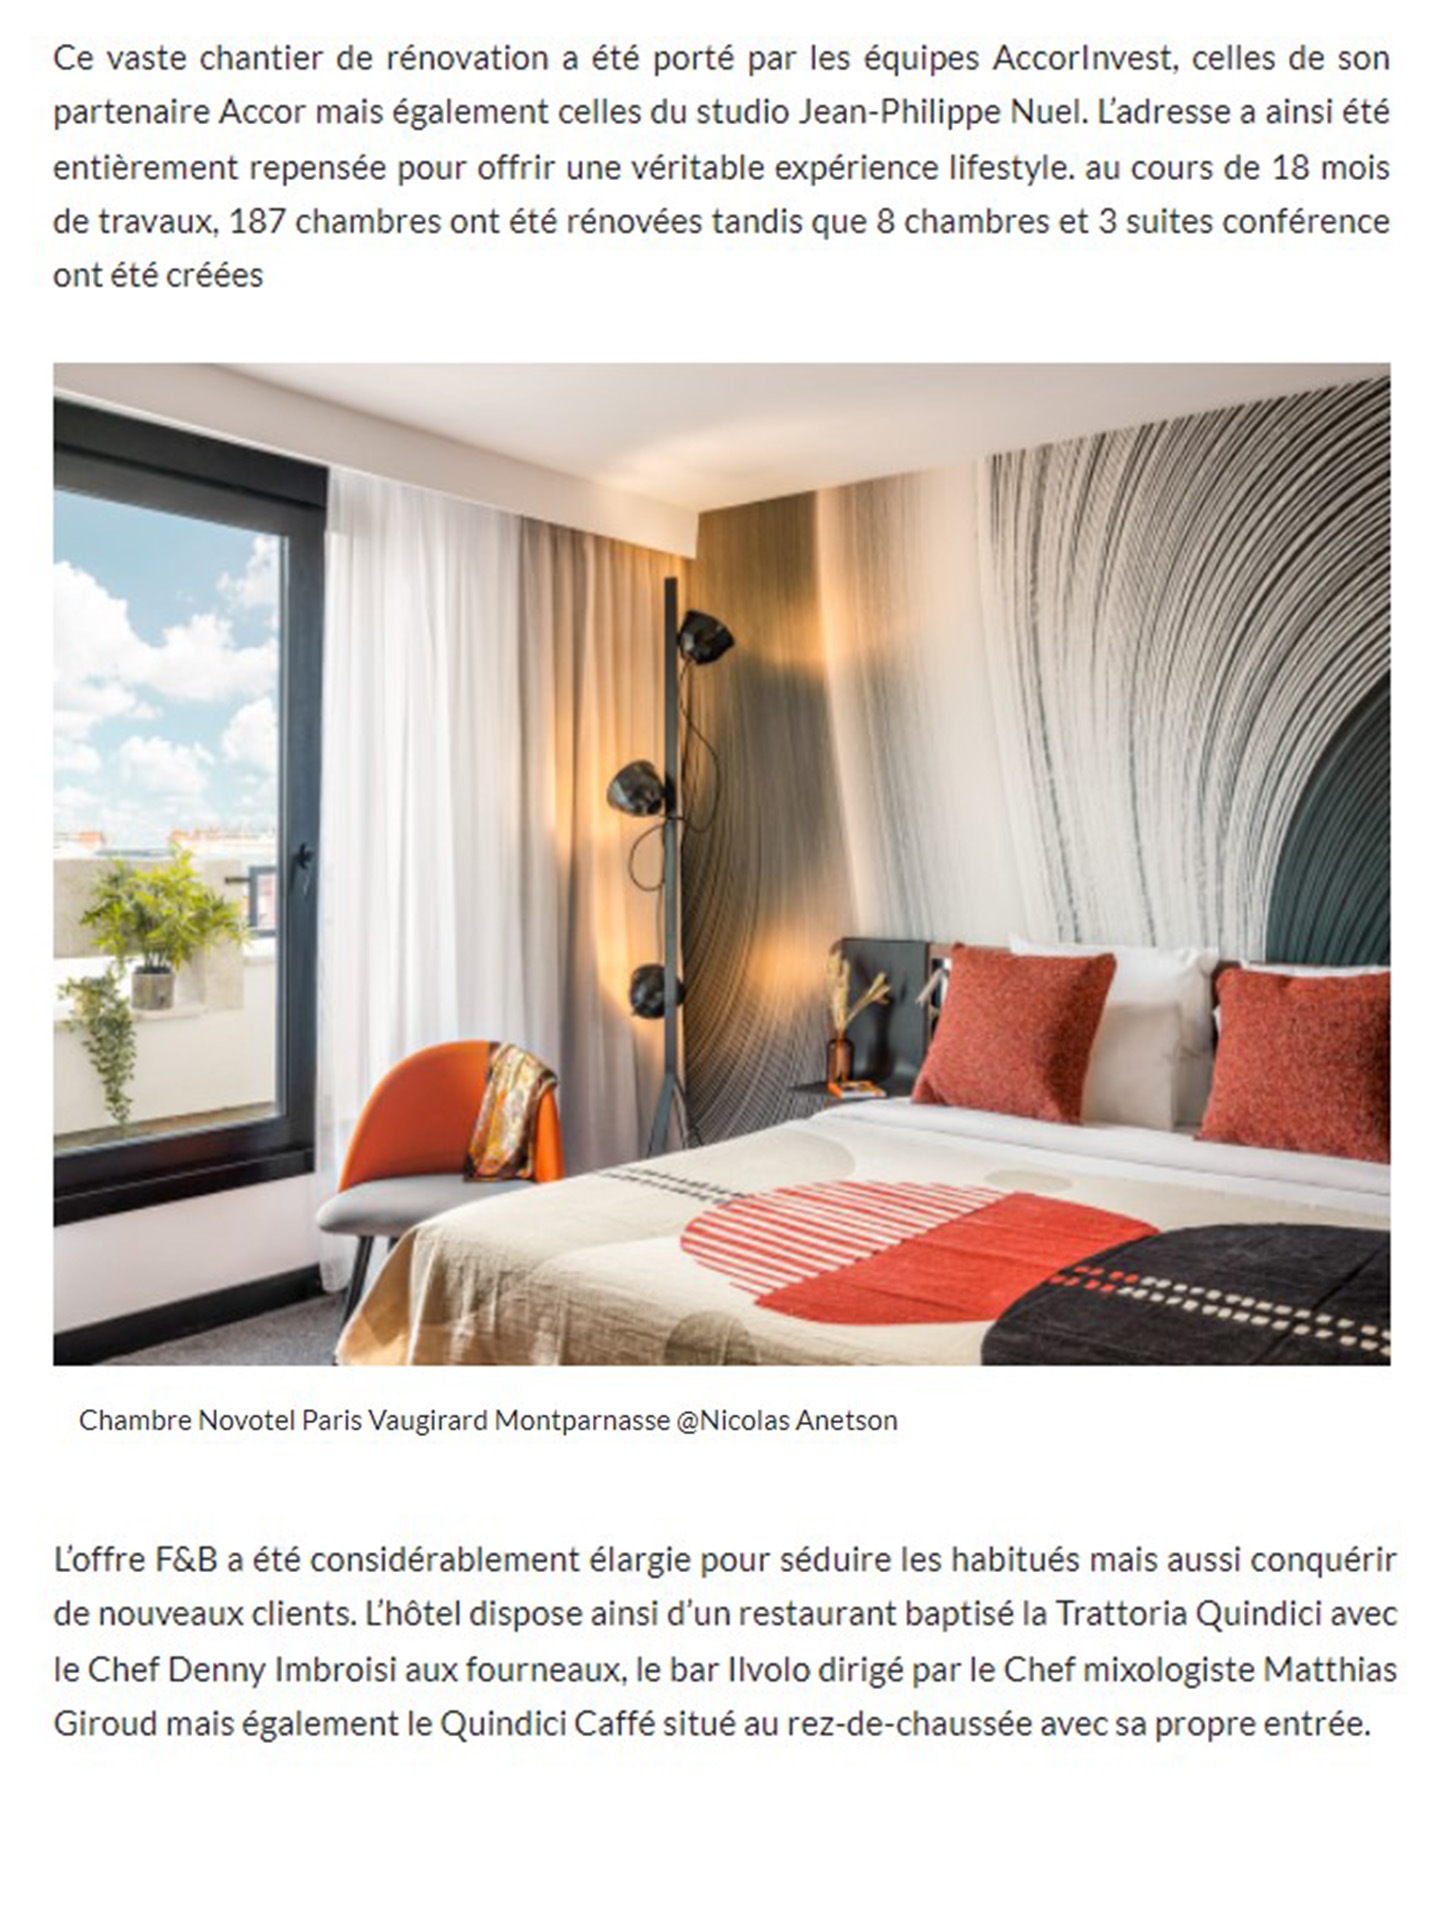 AccorInvest inaugurates Novotel Paris vaugirard renovated by jean-philippe nuel studio, interior design, luxury hotel, lifestyle hotel, interior design, parisian hotel